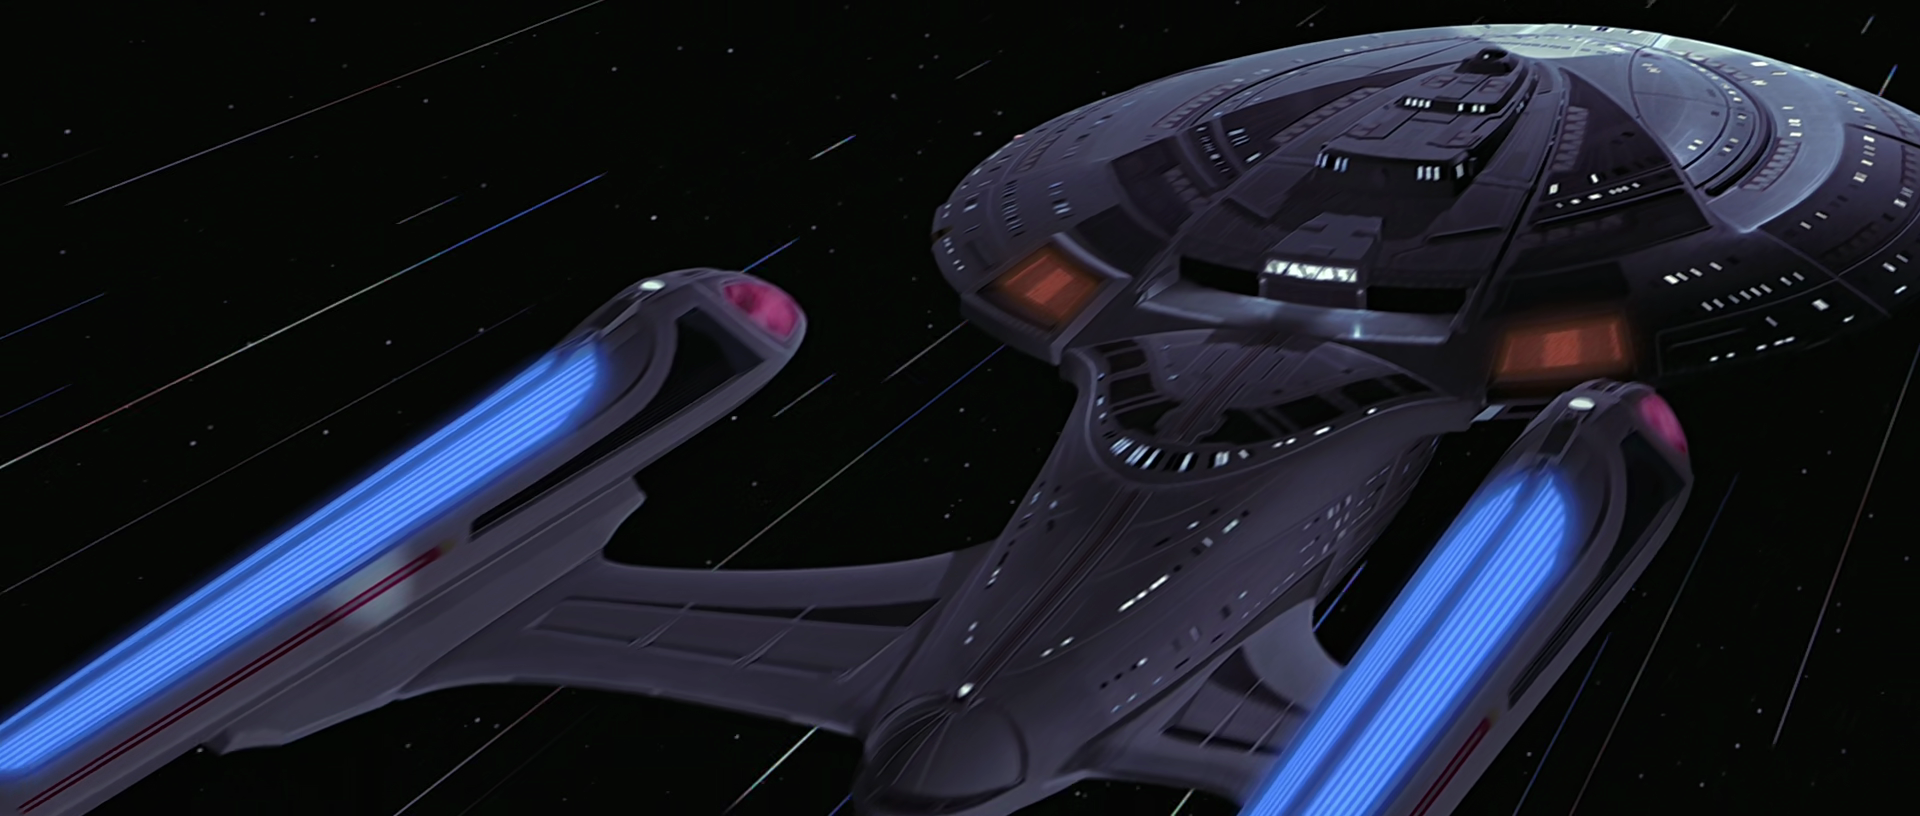 USS Enterprise (NCC-1701-E) | Memory Alpha | Fandom